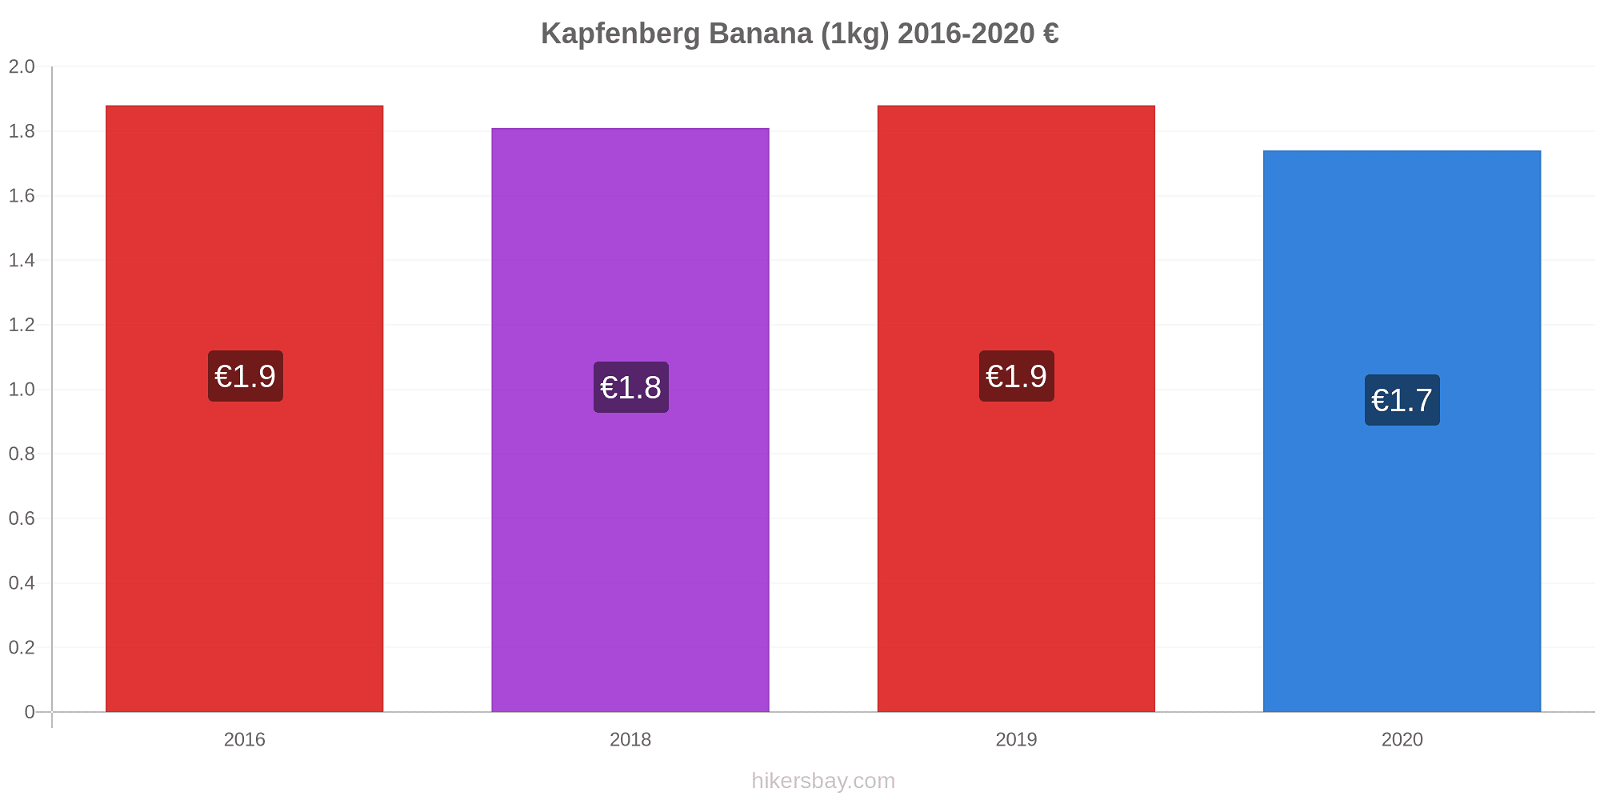 Kapfenberg modificări de preț Banana (1kg) hikersbay.com